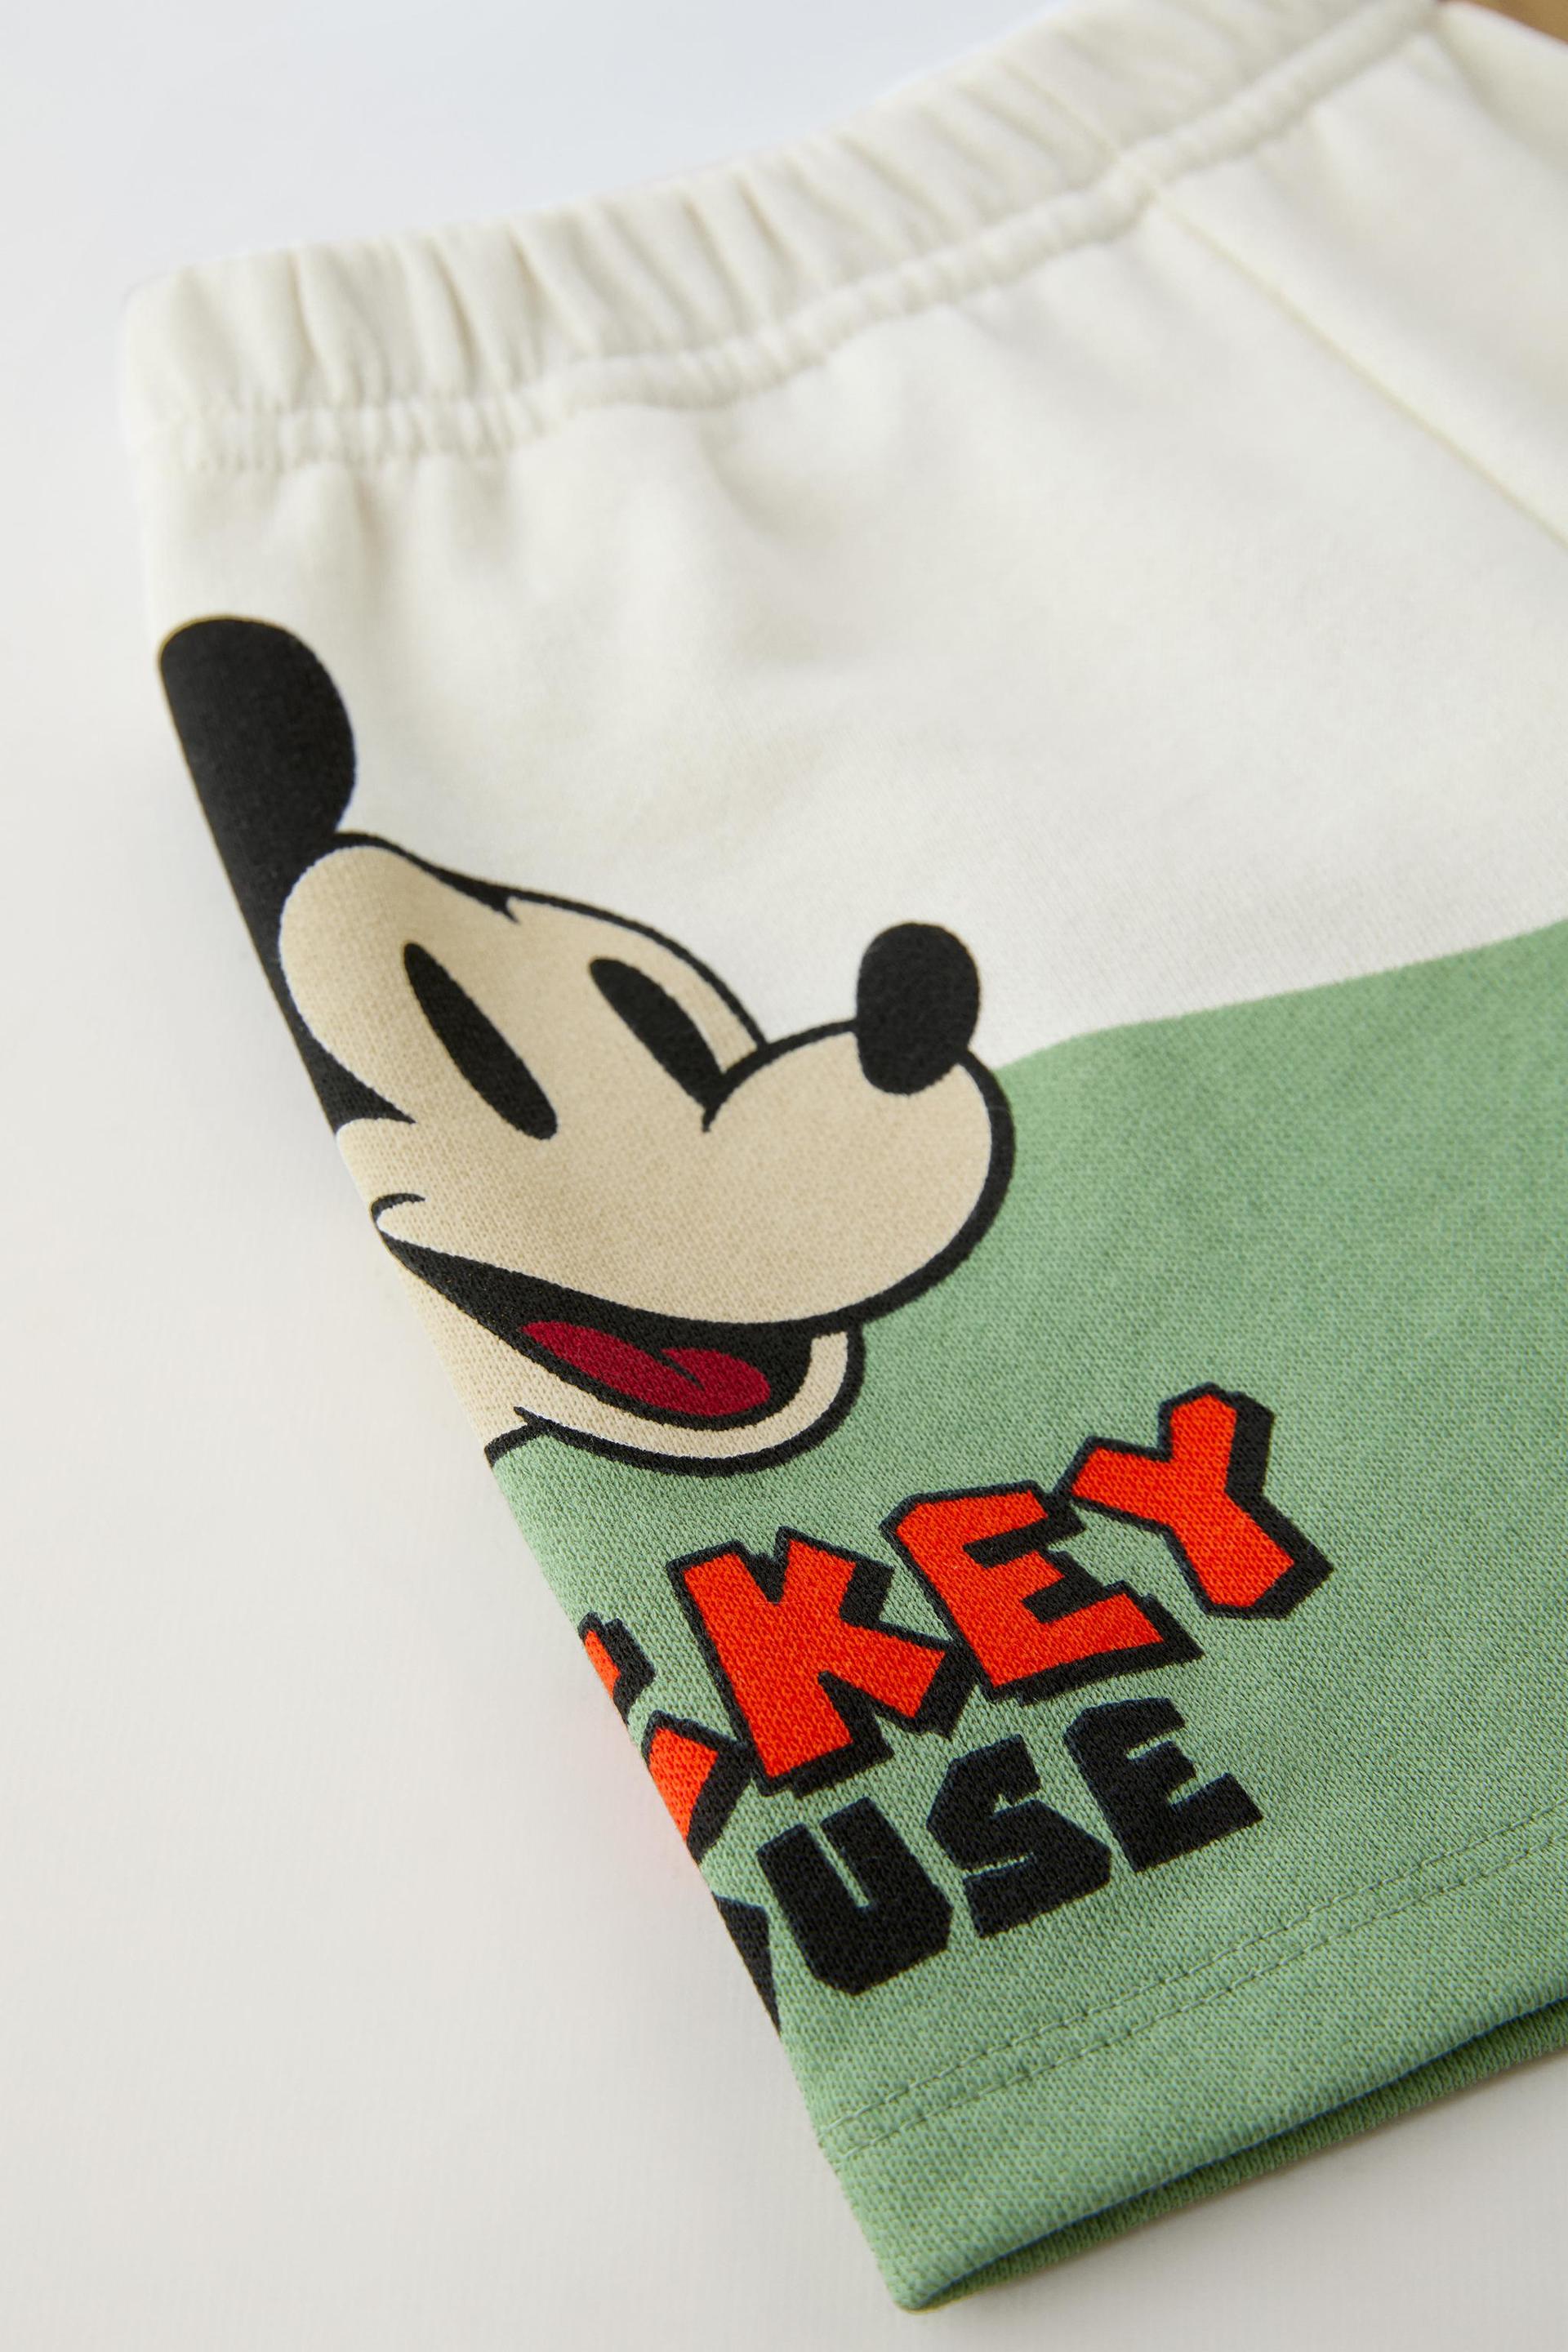 T-shirt da Zara Boys Mickey da Disney Galveias • OLX Portugal